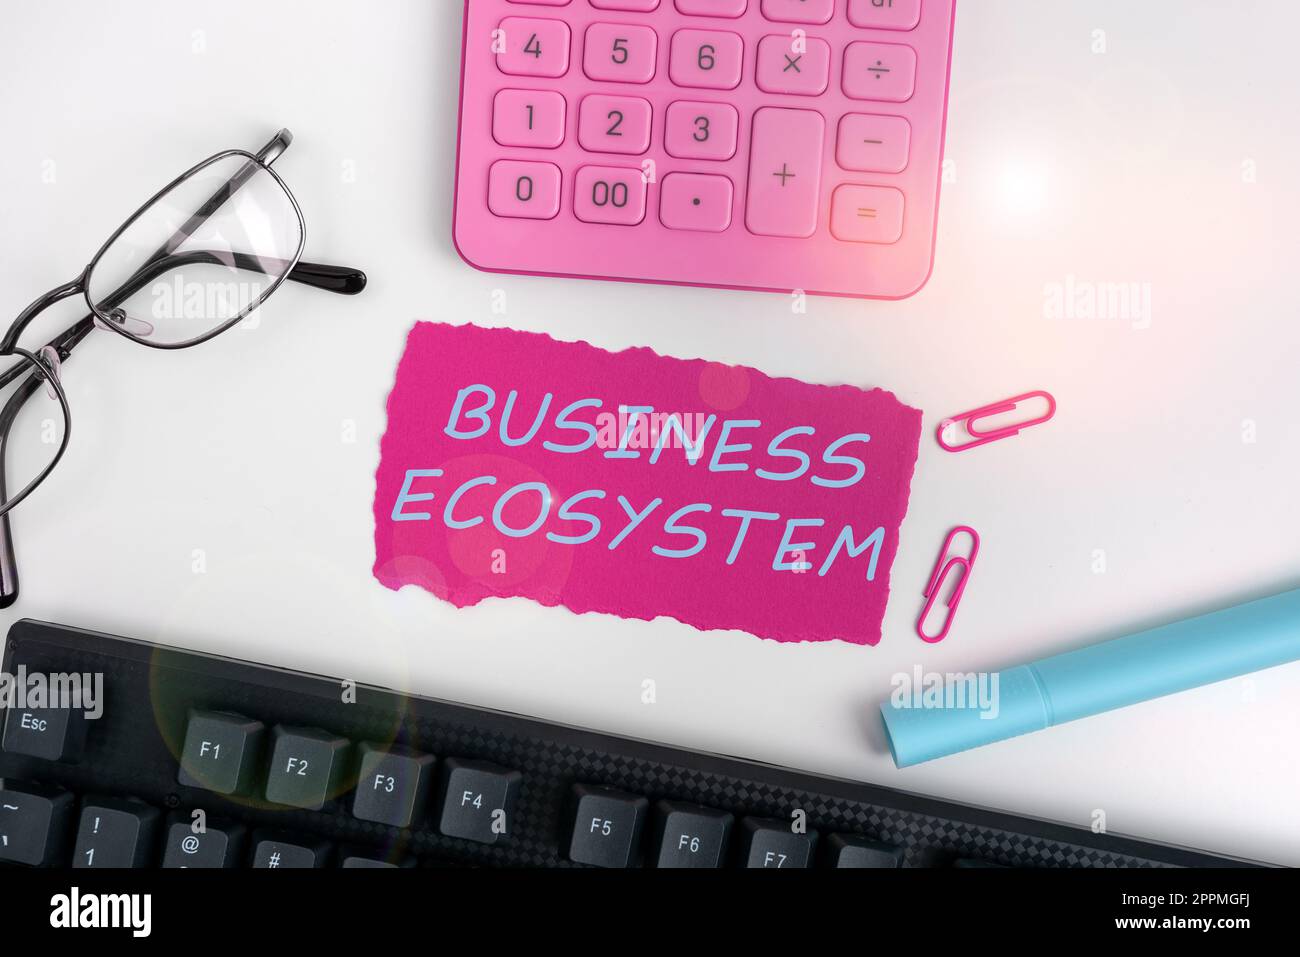 Konzeptionelle Darstellung des Business Ecosystems. Geschäftsidee entwickeln und implementieren Wachstumschancen für das Unternehmen Stockfoto